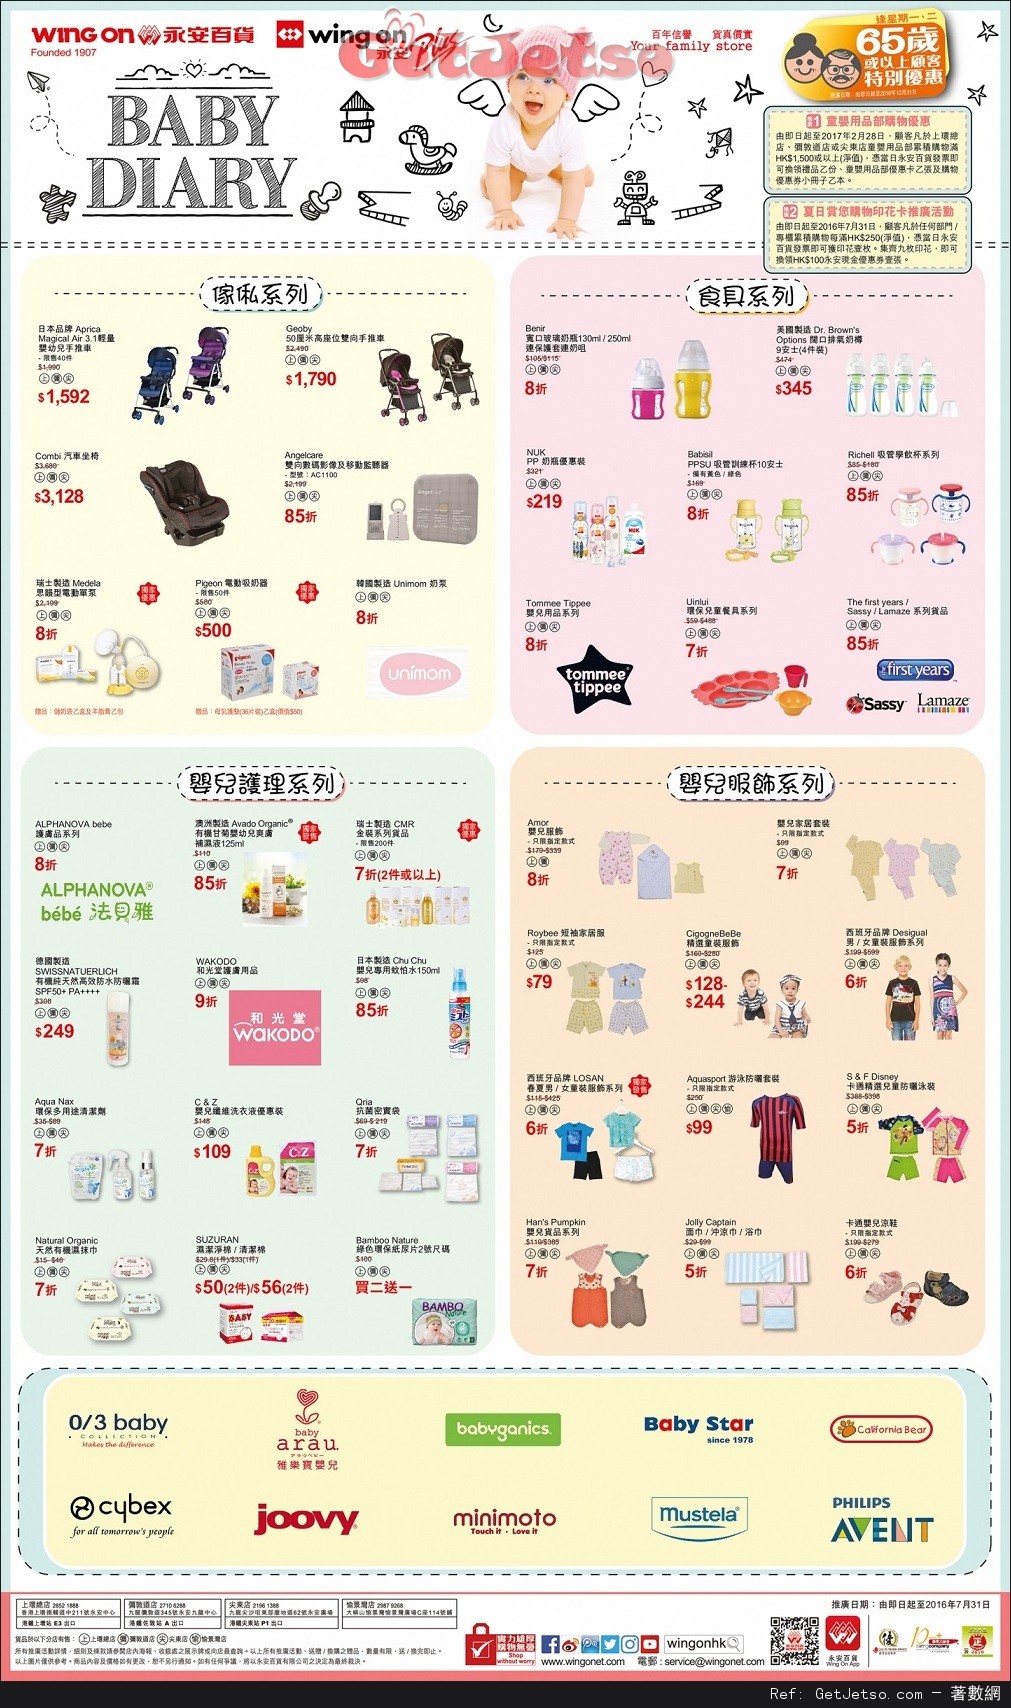 永安百貨嬰兒用品及服飾購買優惠(至16年7月31日)圖片1